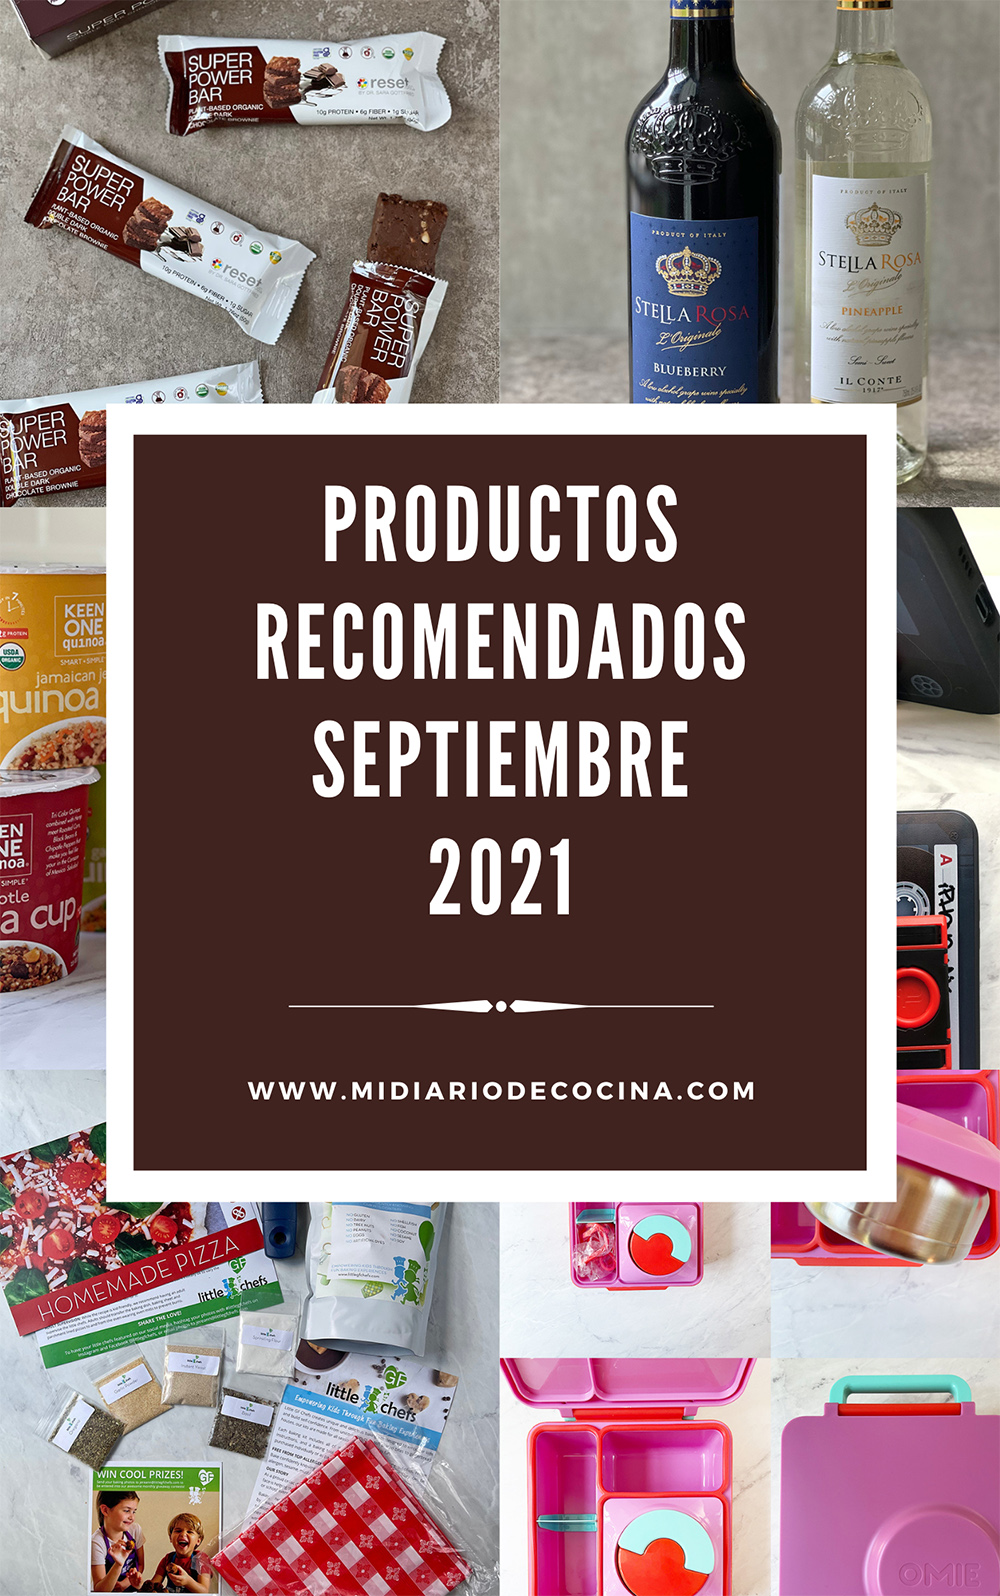 Productos recomendados septiembre 2021